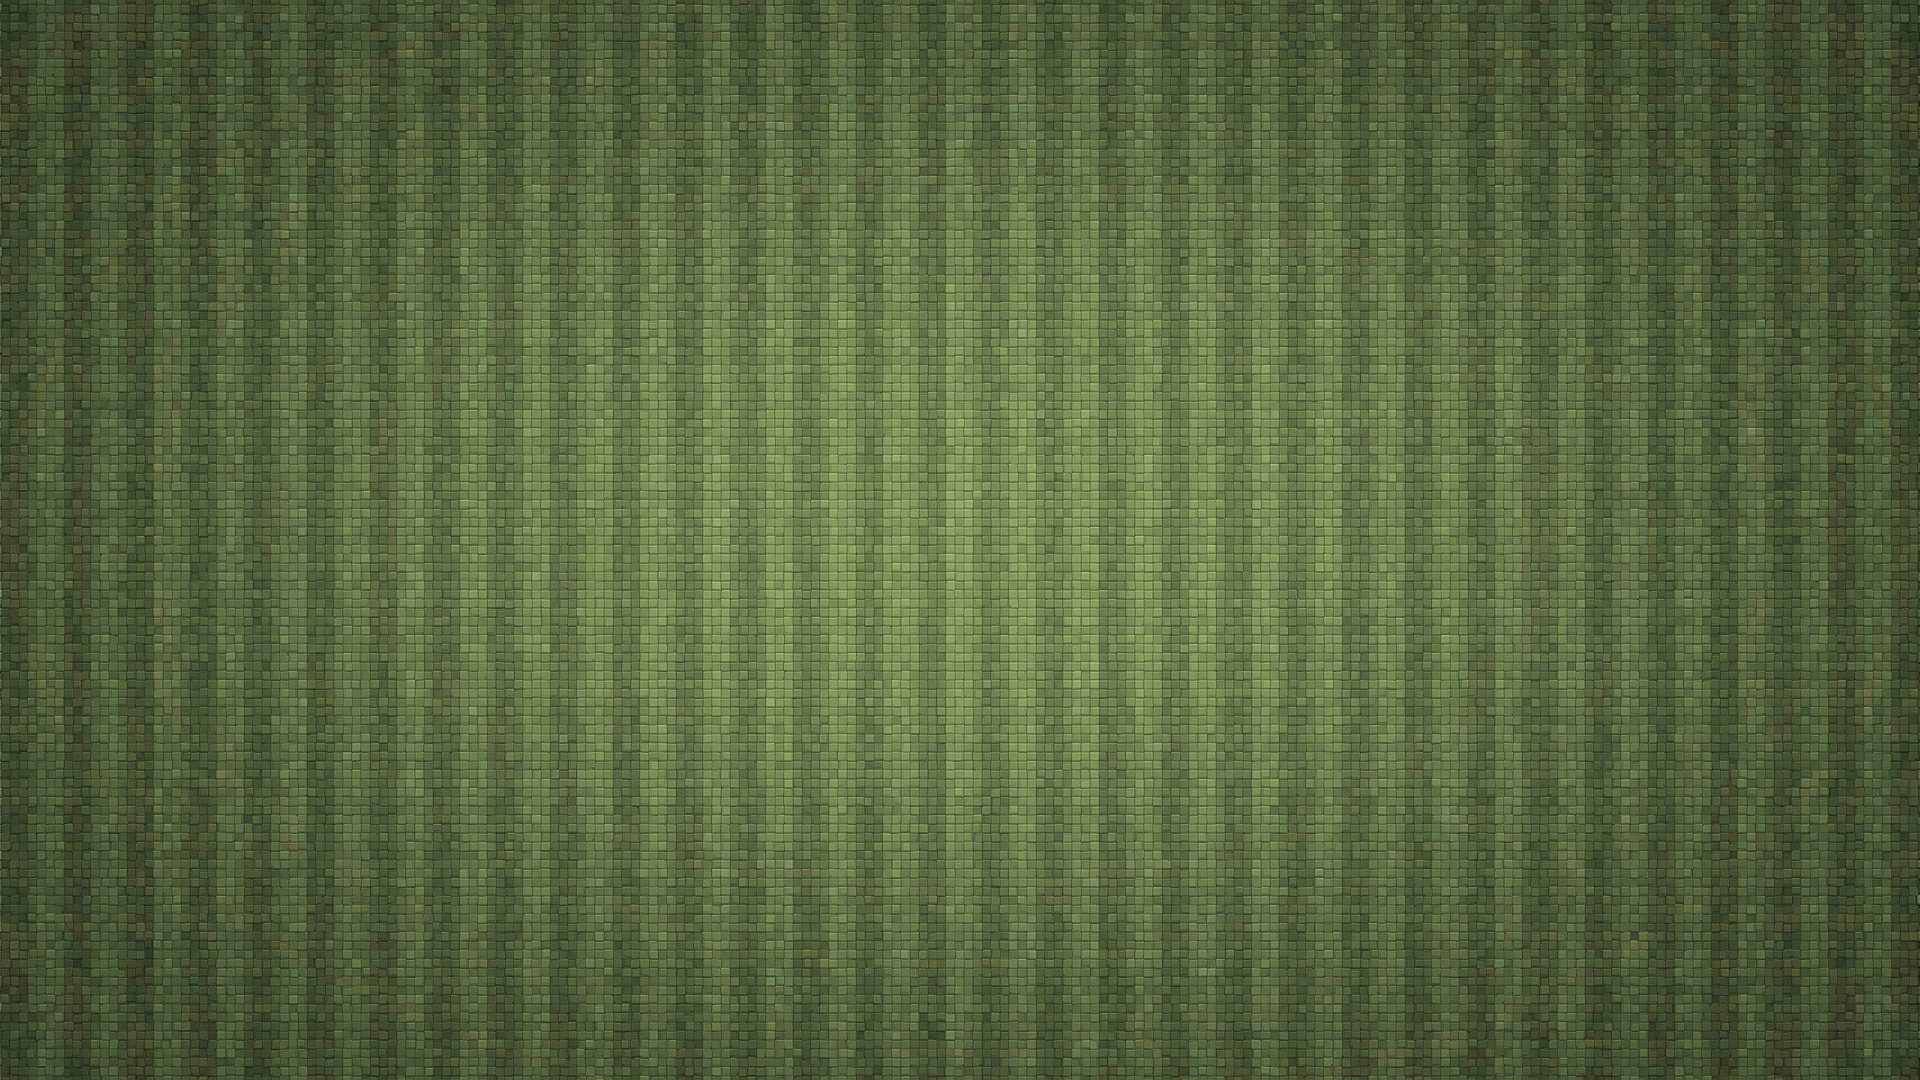 19x1080 目に優しい緑色系の きれいな壁紙 フルhd 19x1080 目に優しい緑色系の きれいな壁紙 フルhd Naver まとめ